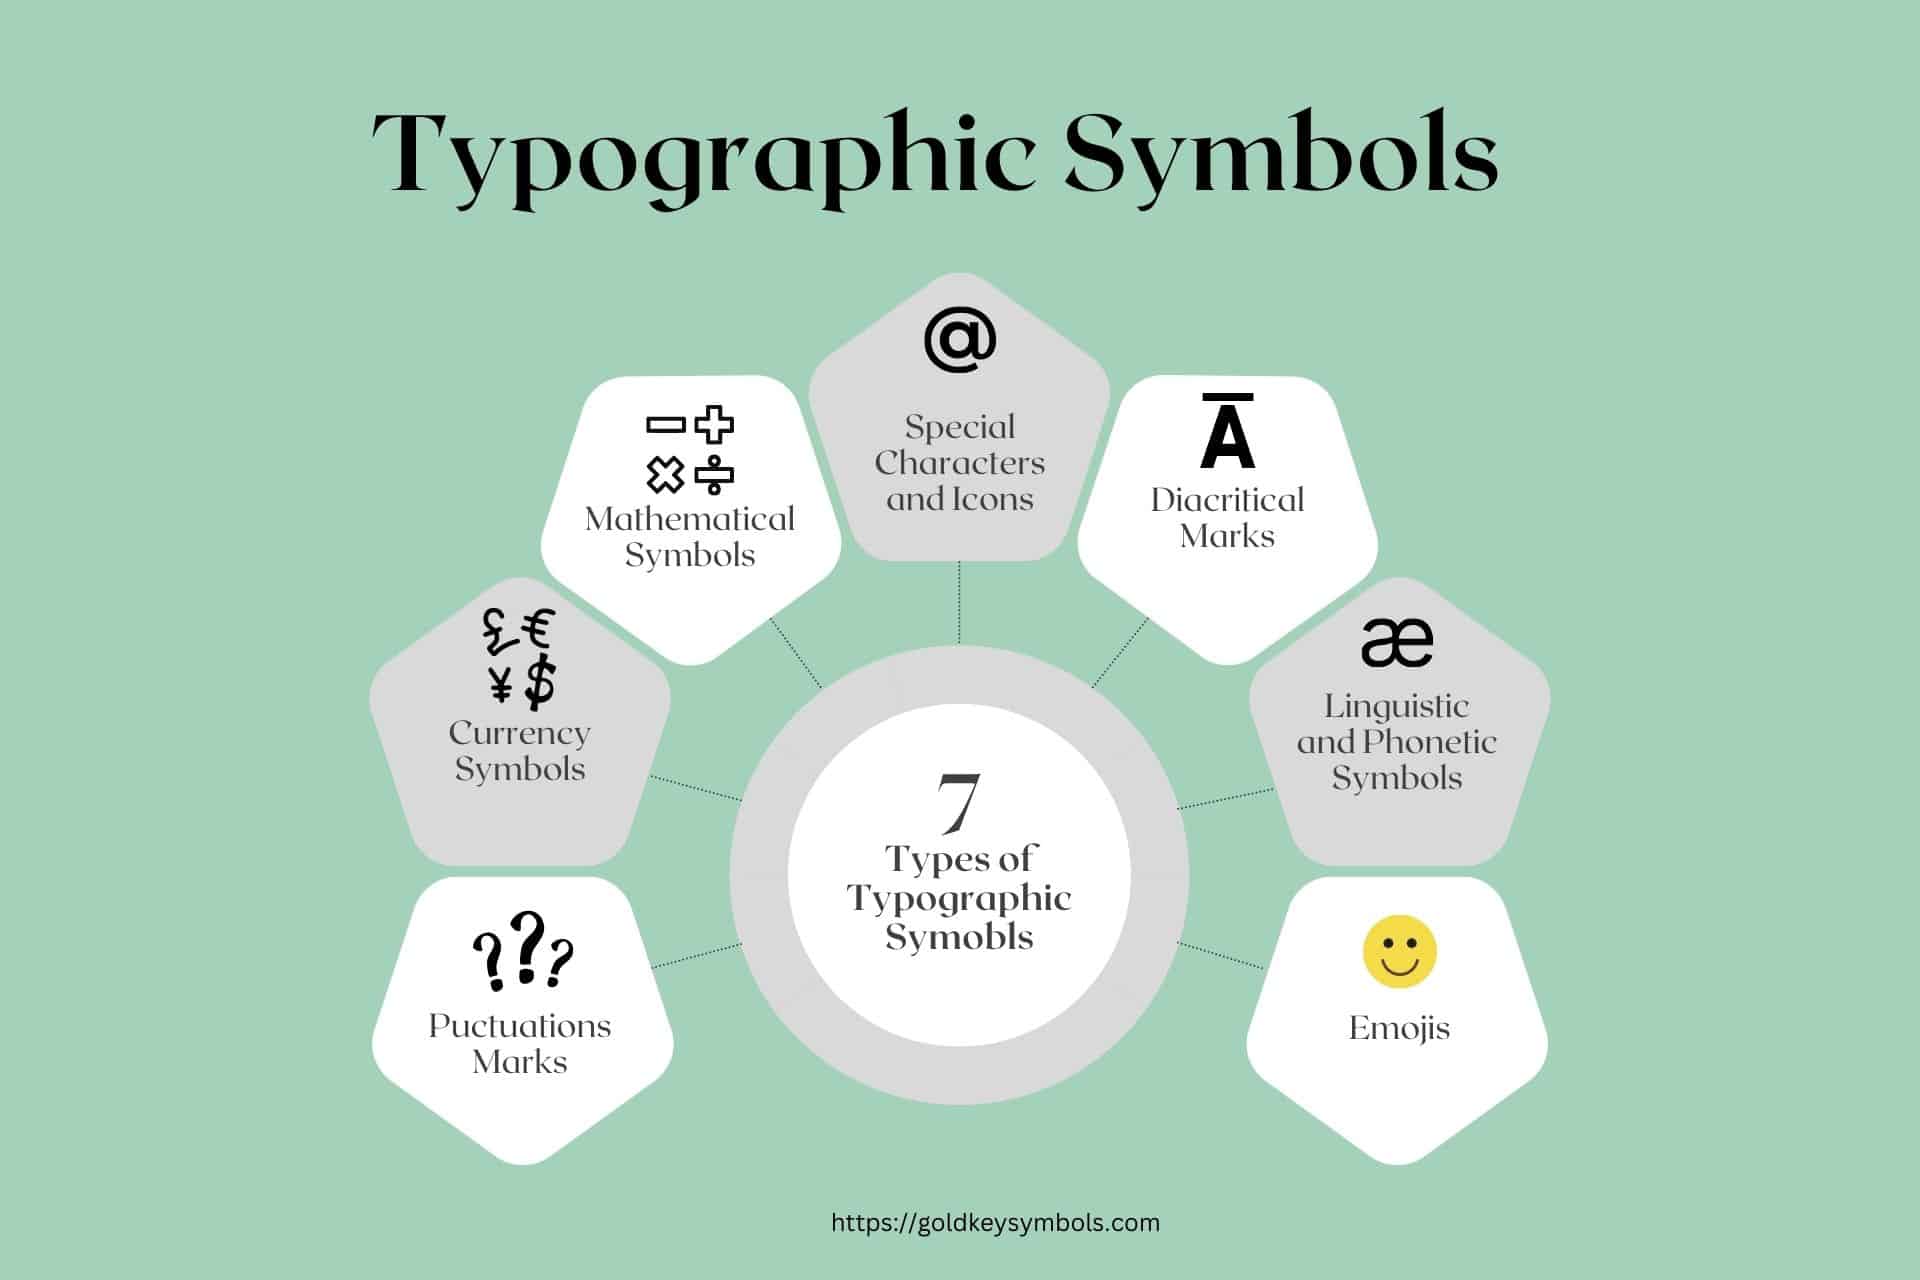 types of typographic symbols infographic